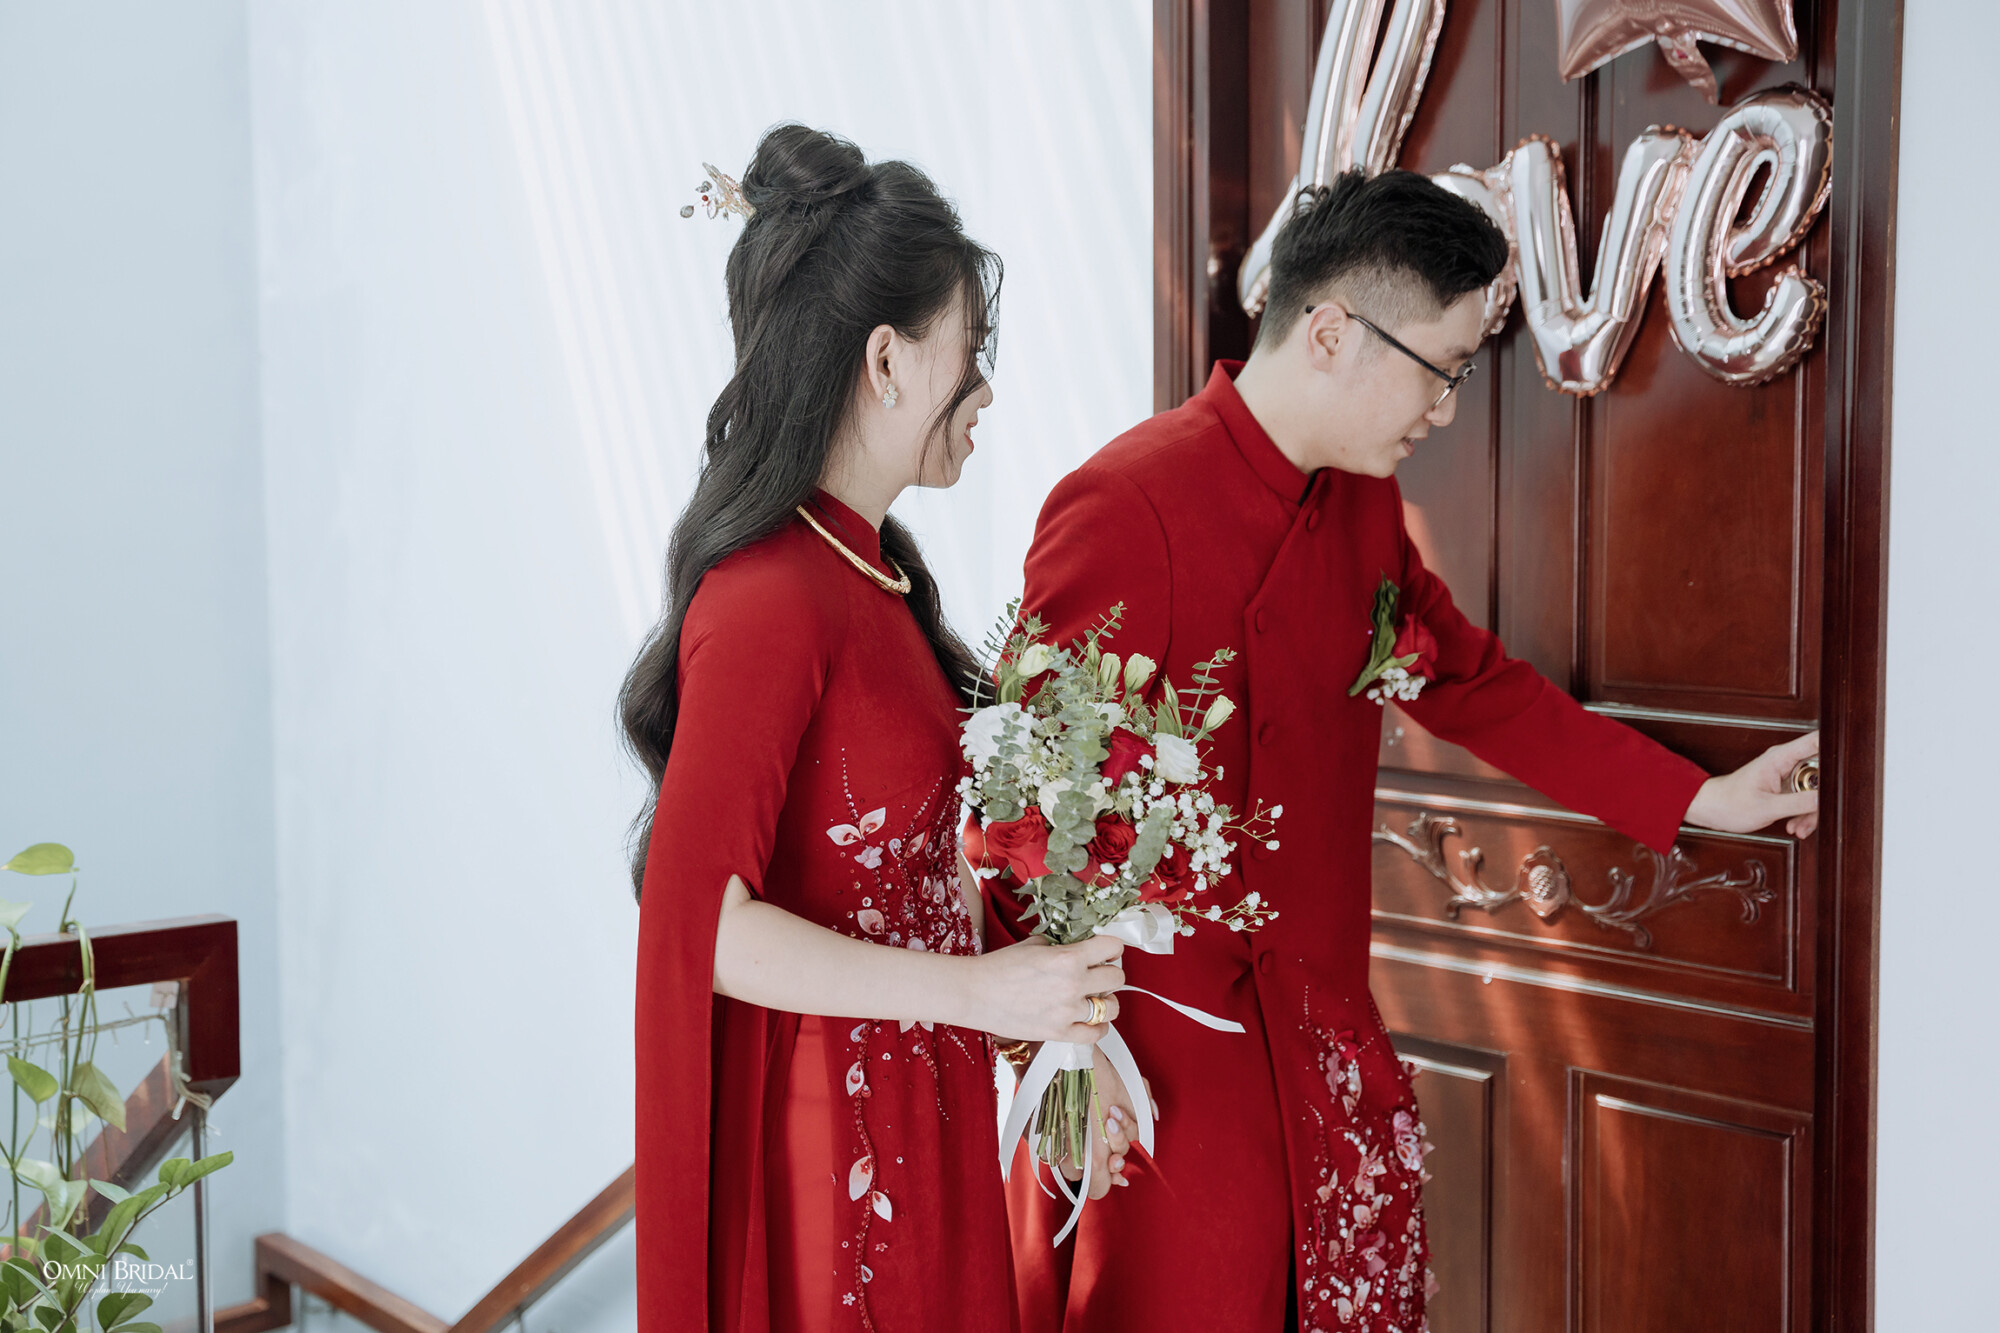 Thủ tục xem phòng tân hôn trong nghi lễ đám cưới tại nhà trai